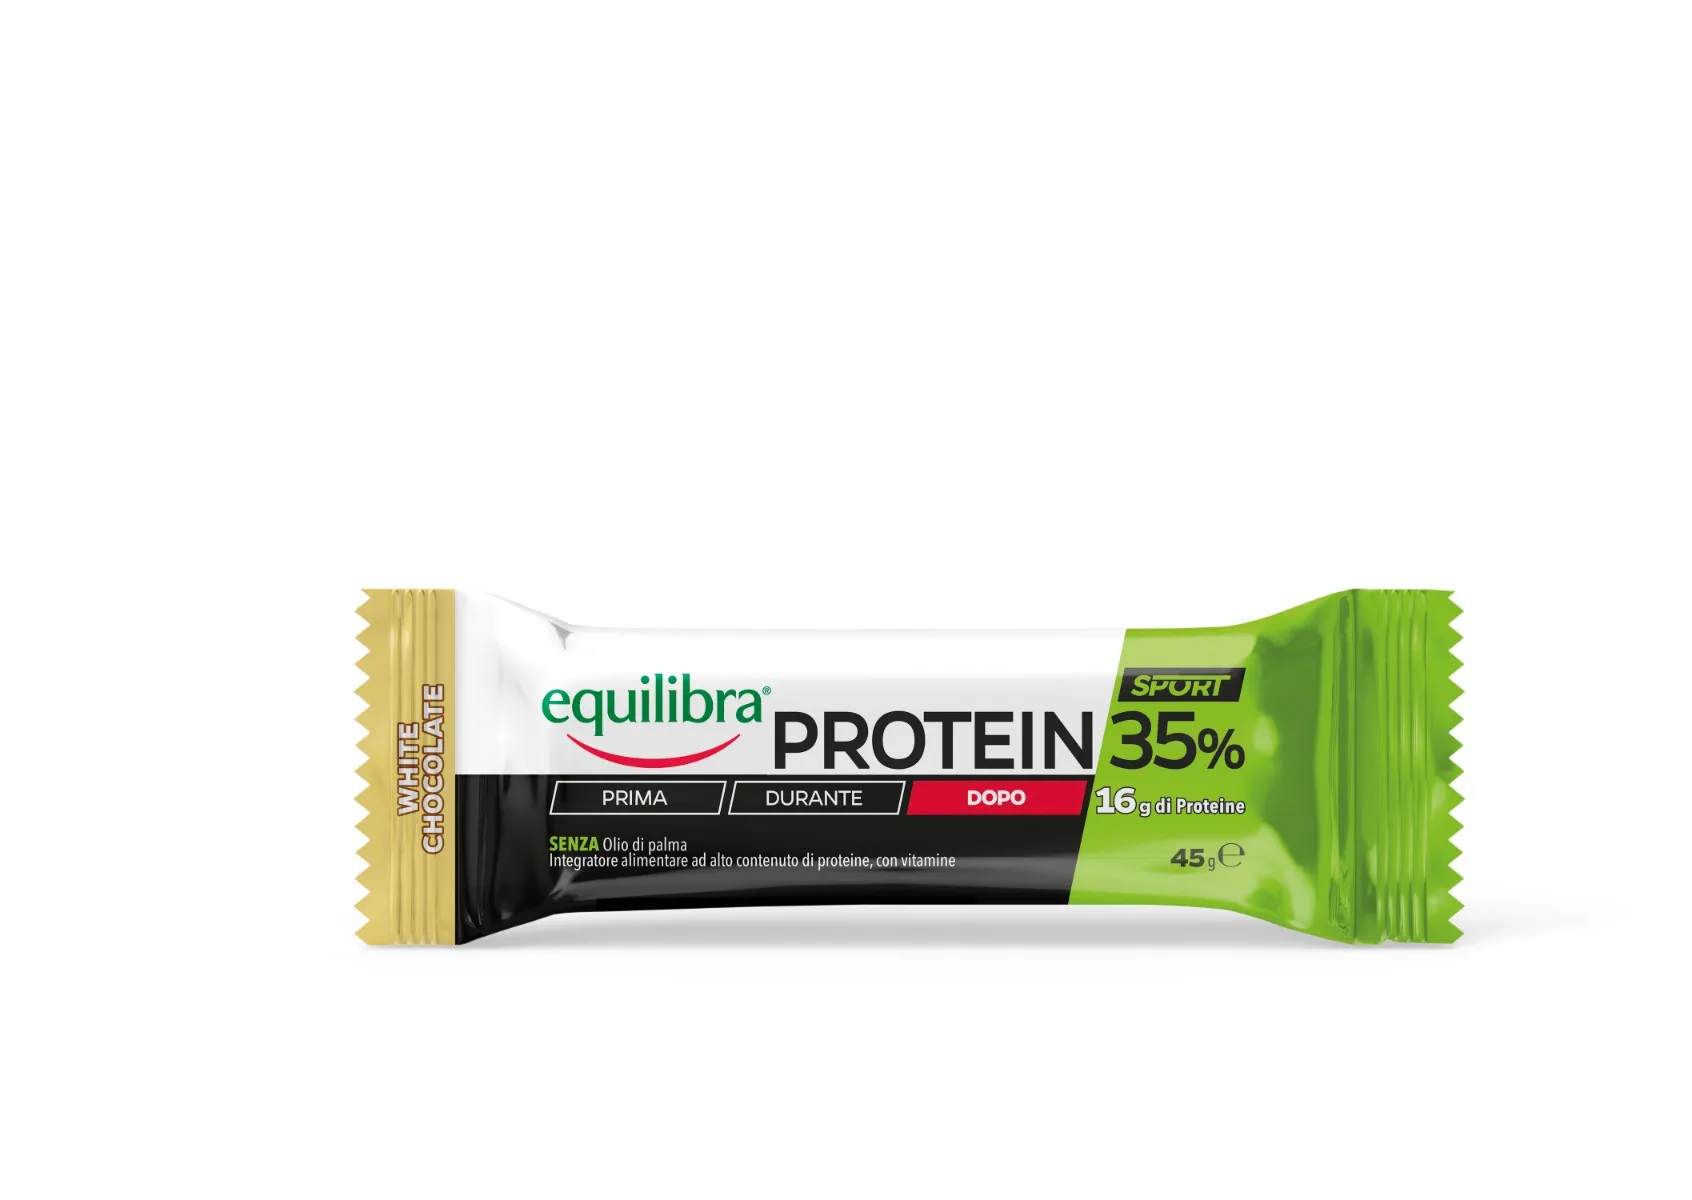 Equilibra Protein 35% Barretta White Chocolate 45 g Ricco di proteine